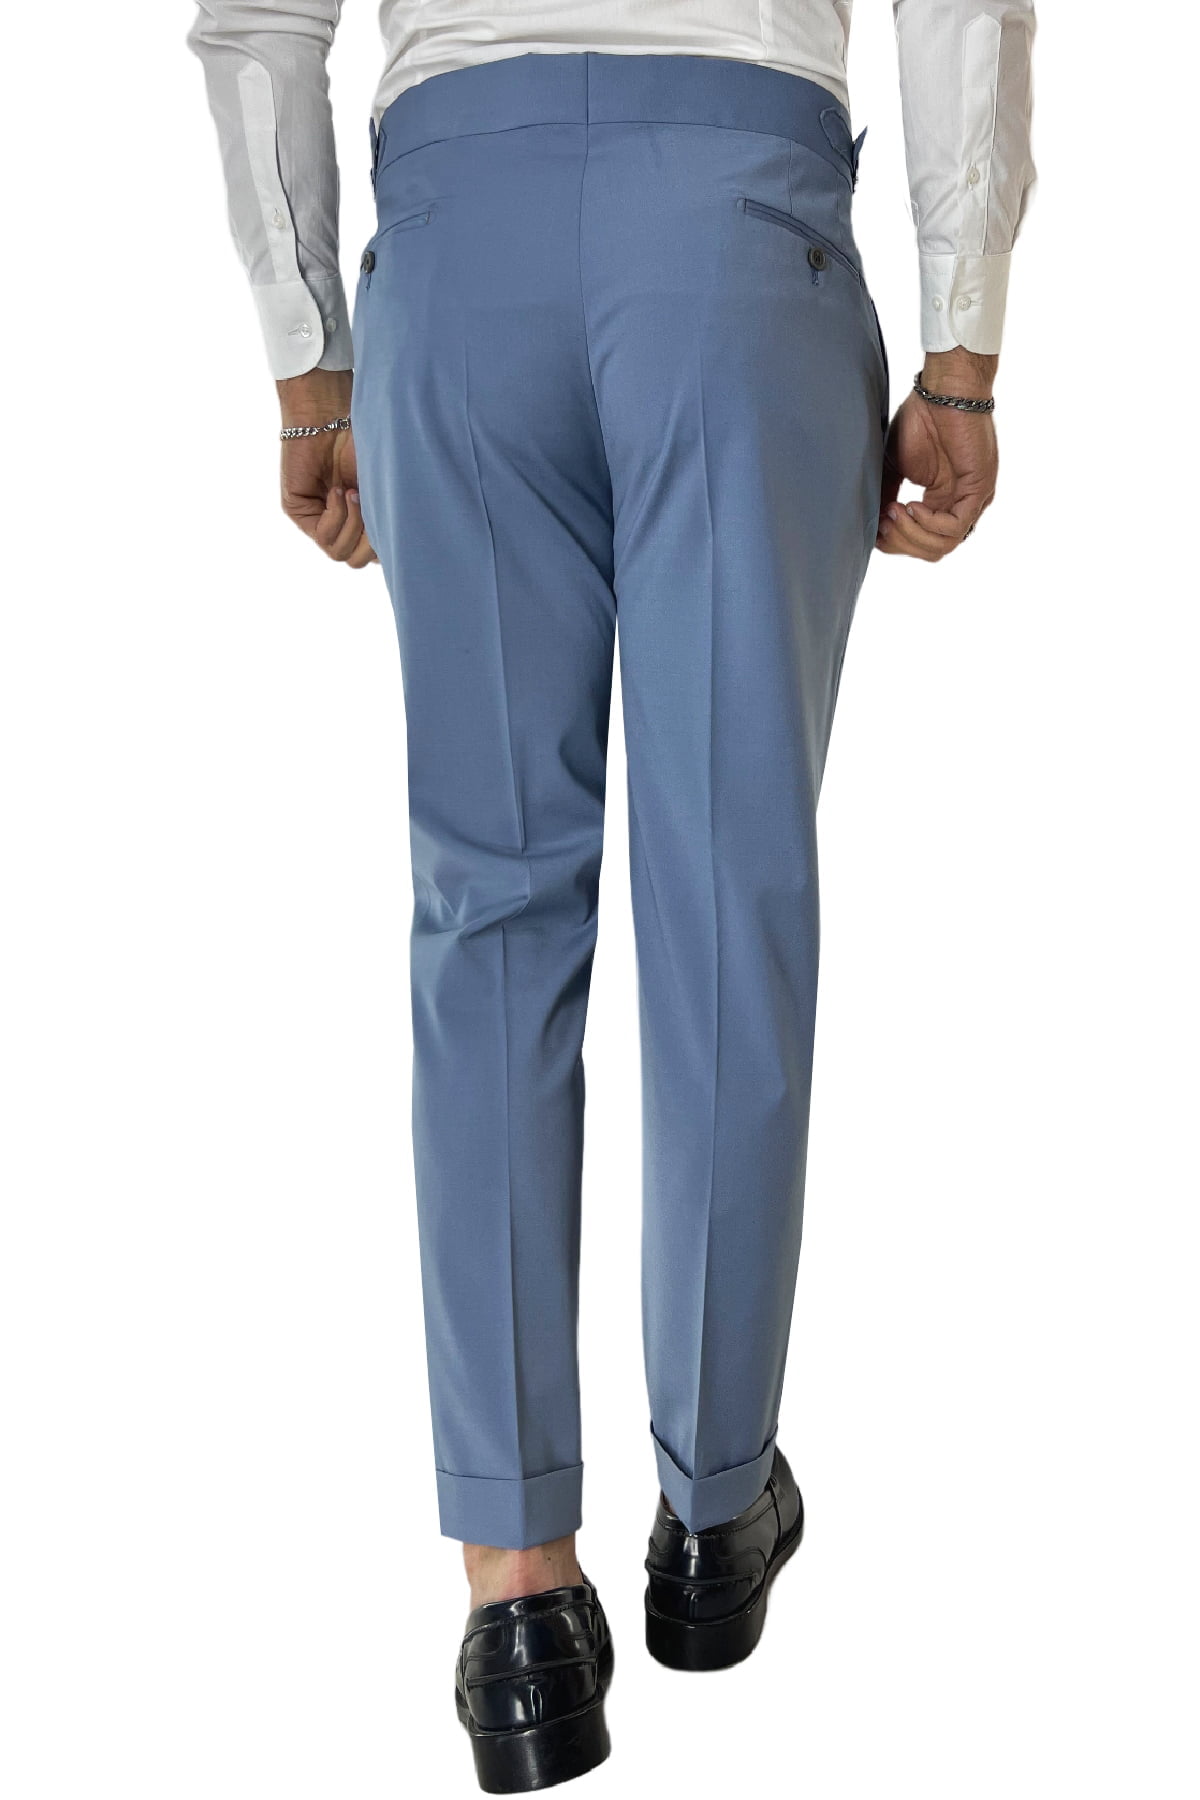 Pantalone uomo Celeste in fresco lana tinta unita vita alta con pinces fibbie laterali e risvolto 4cm